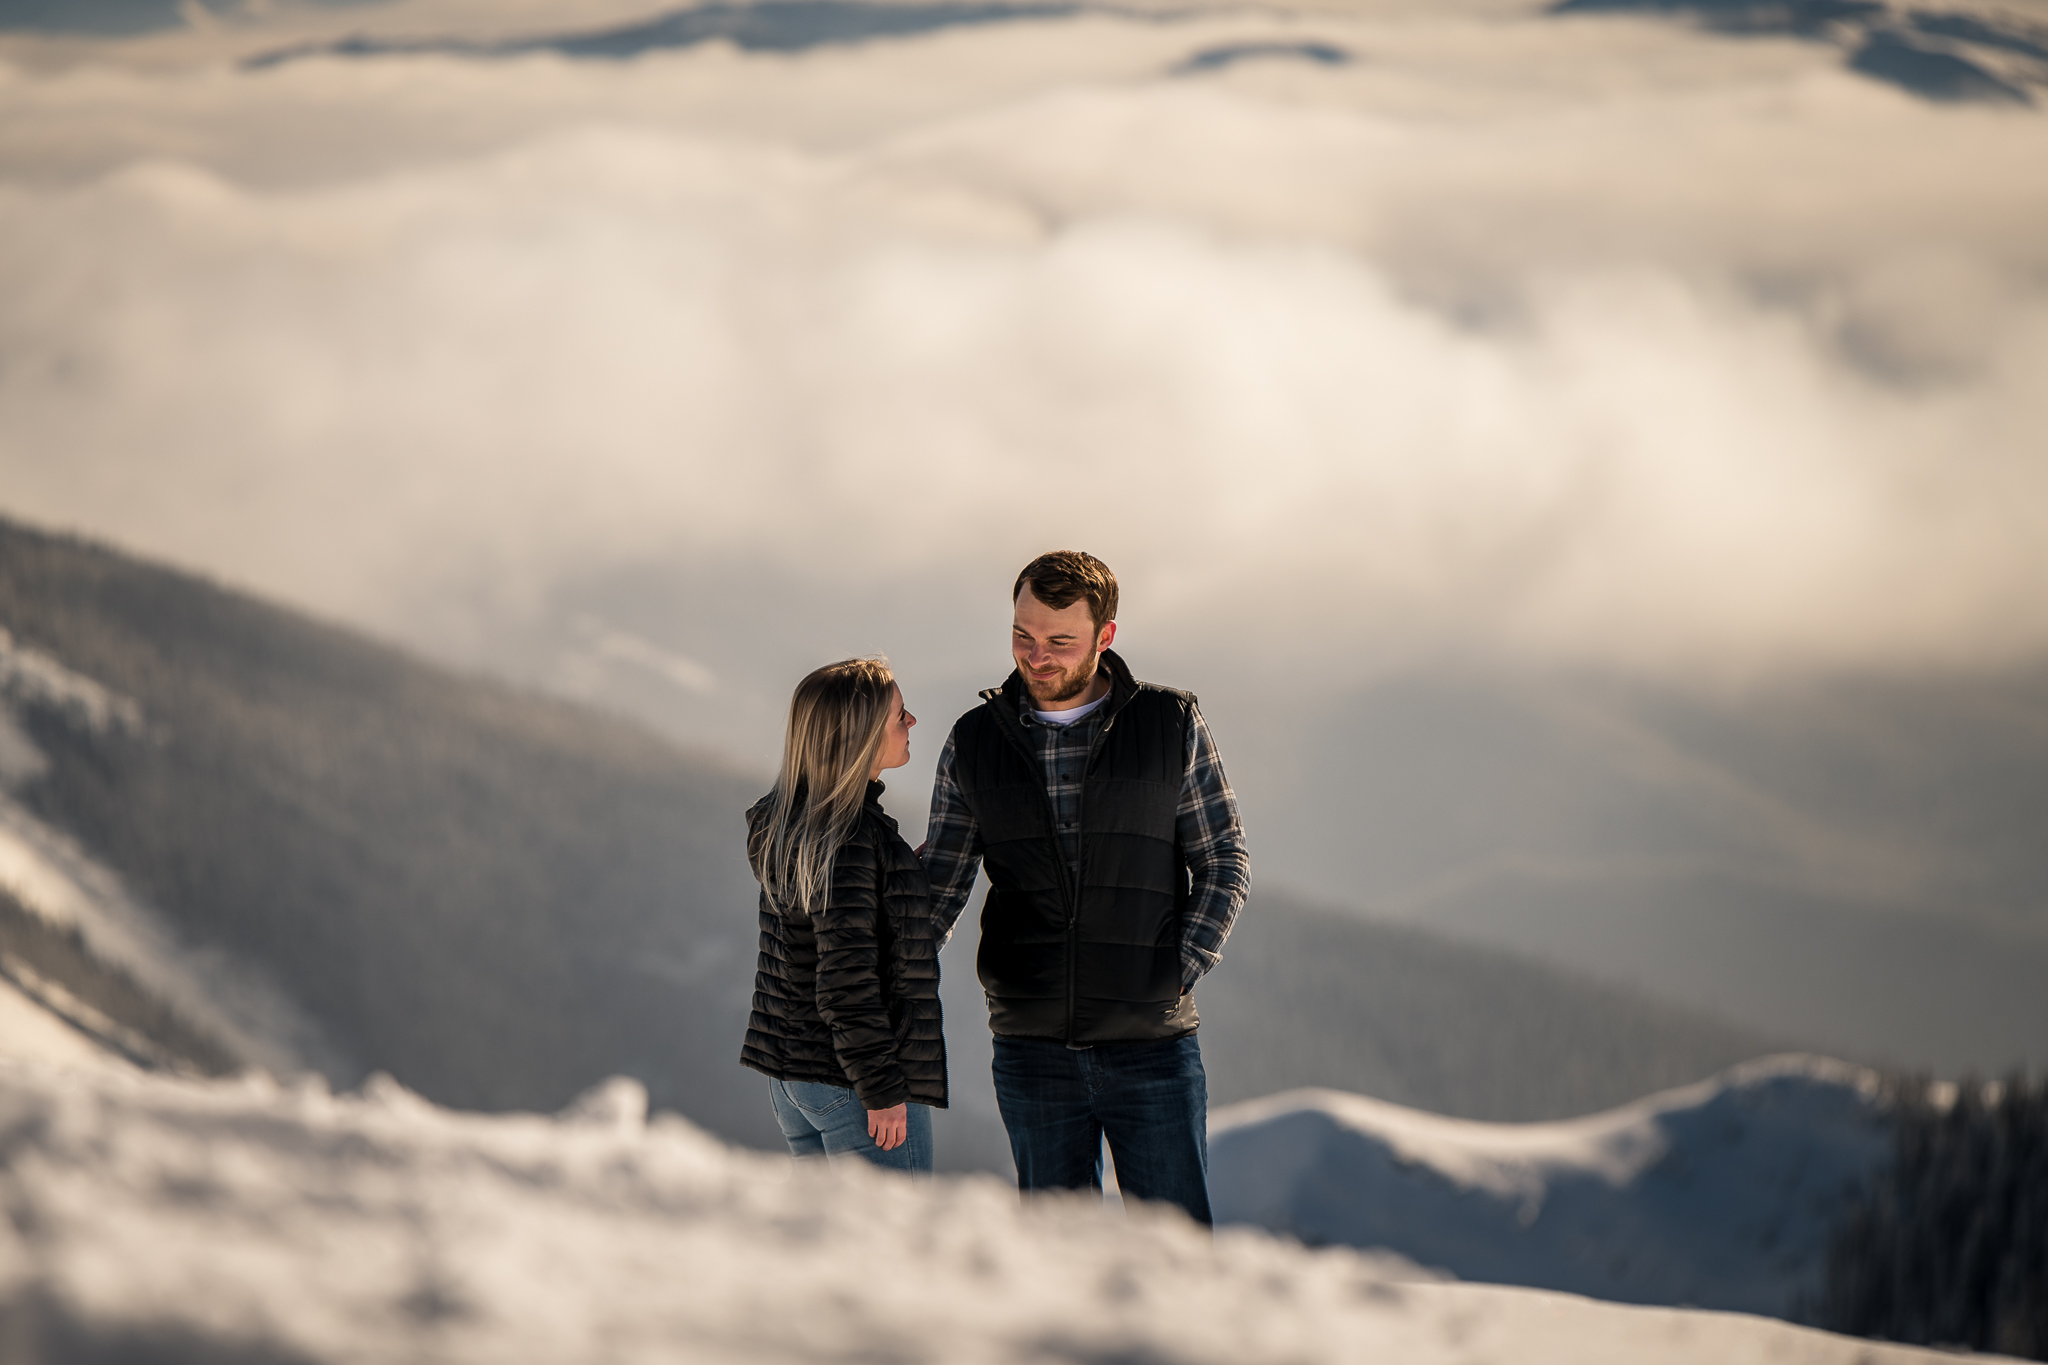 Kananaskis mountain helicopter engagement calgary wedding photographer